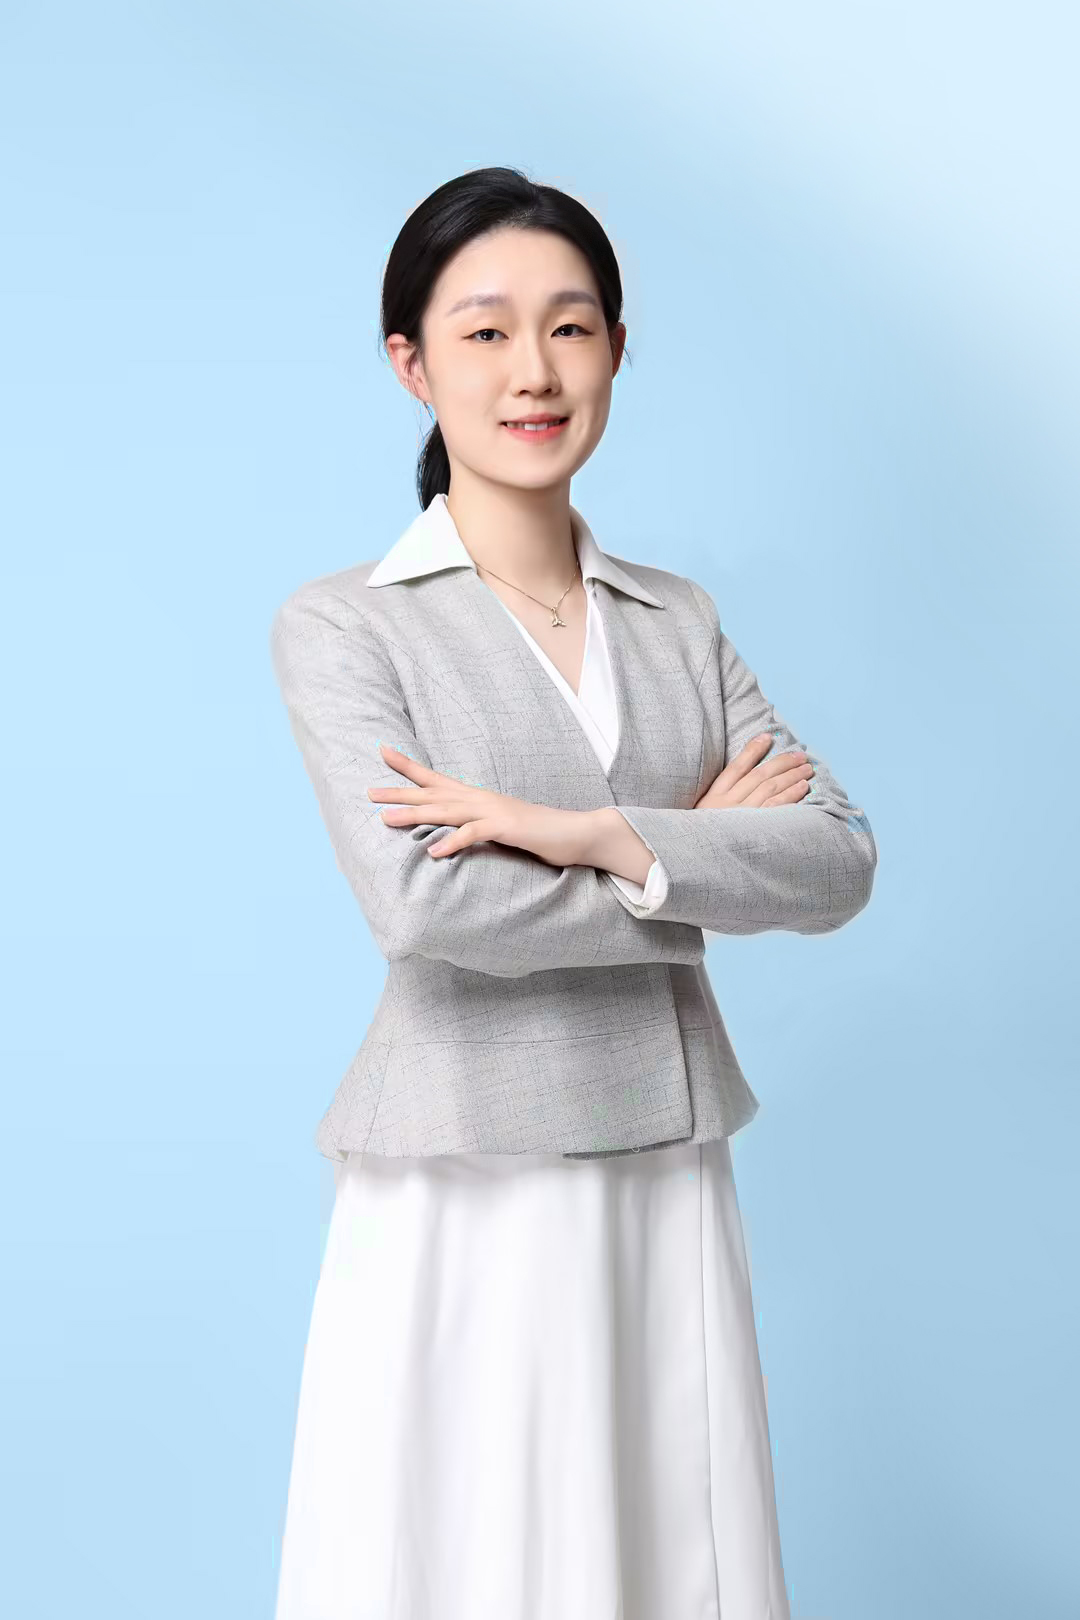 Ms. Shen Jie